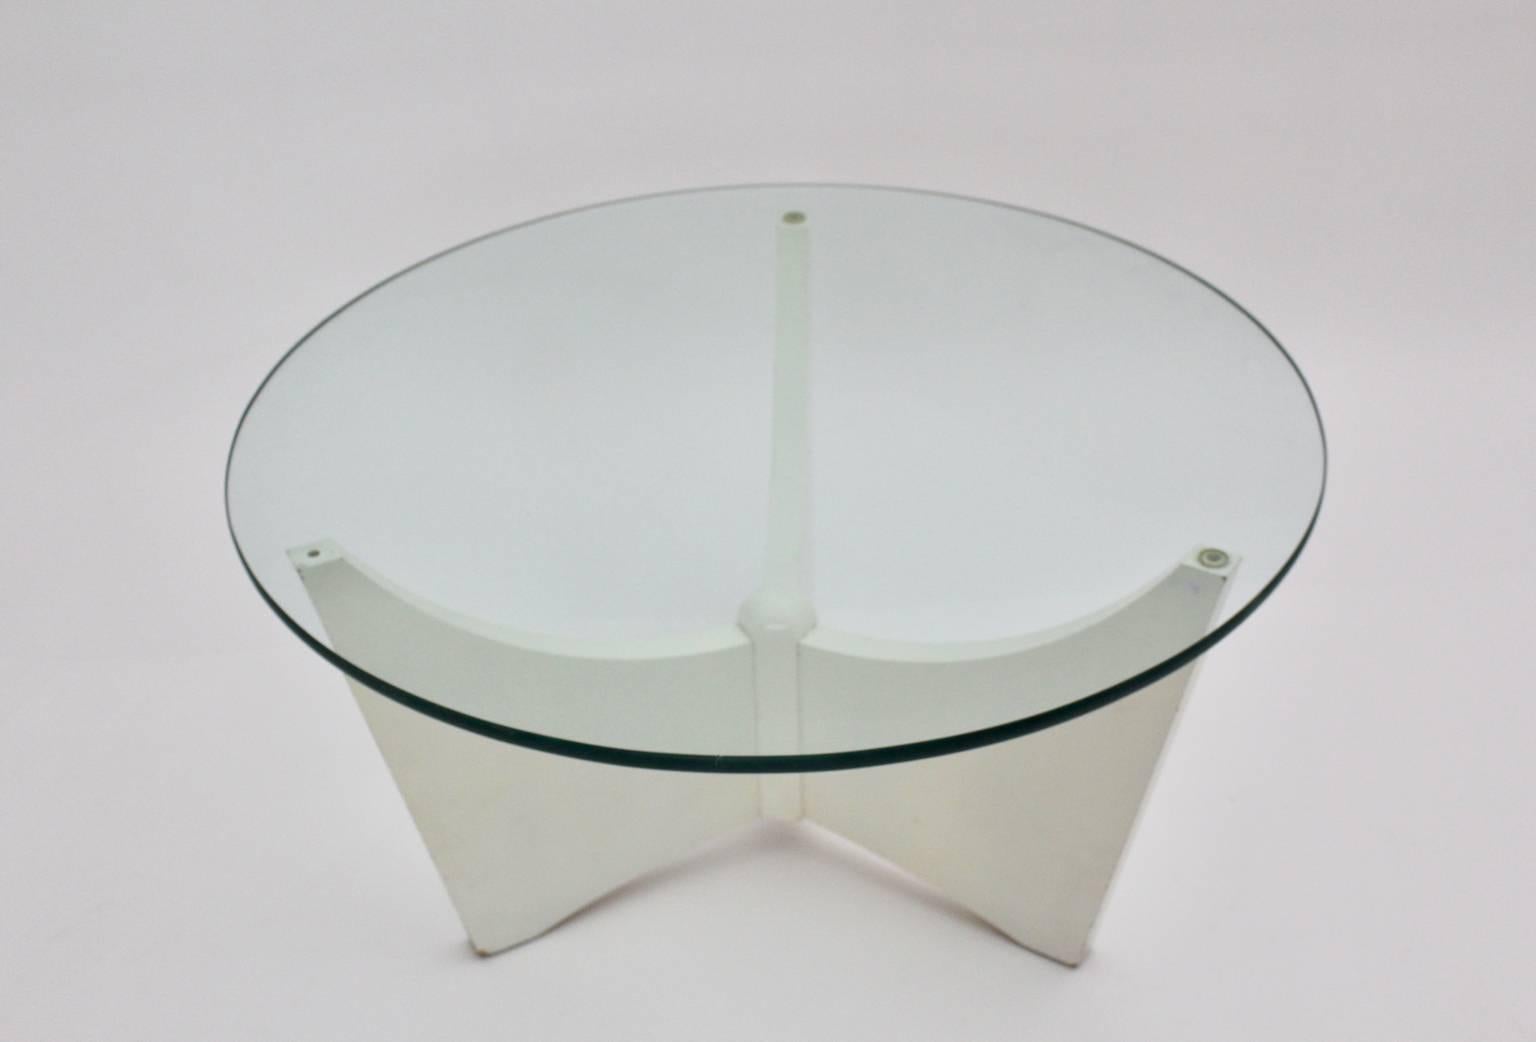 Table basse vintage de l'ère spatiale, qui présente des pieds en bois disposés en forme de trépied et peints en blanc, tout en tenant une assiette en verre dans un style typique des années 1970. Le plateau en verre a une épaisseur de 1,4 cm et